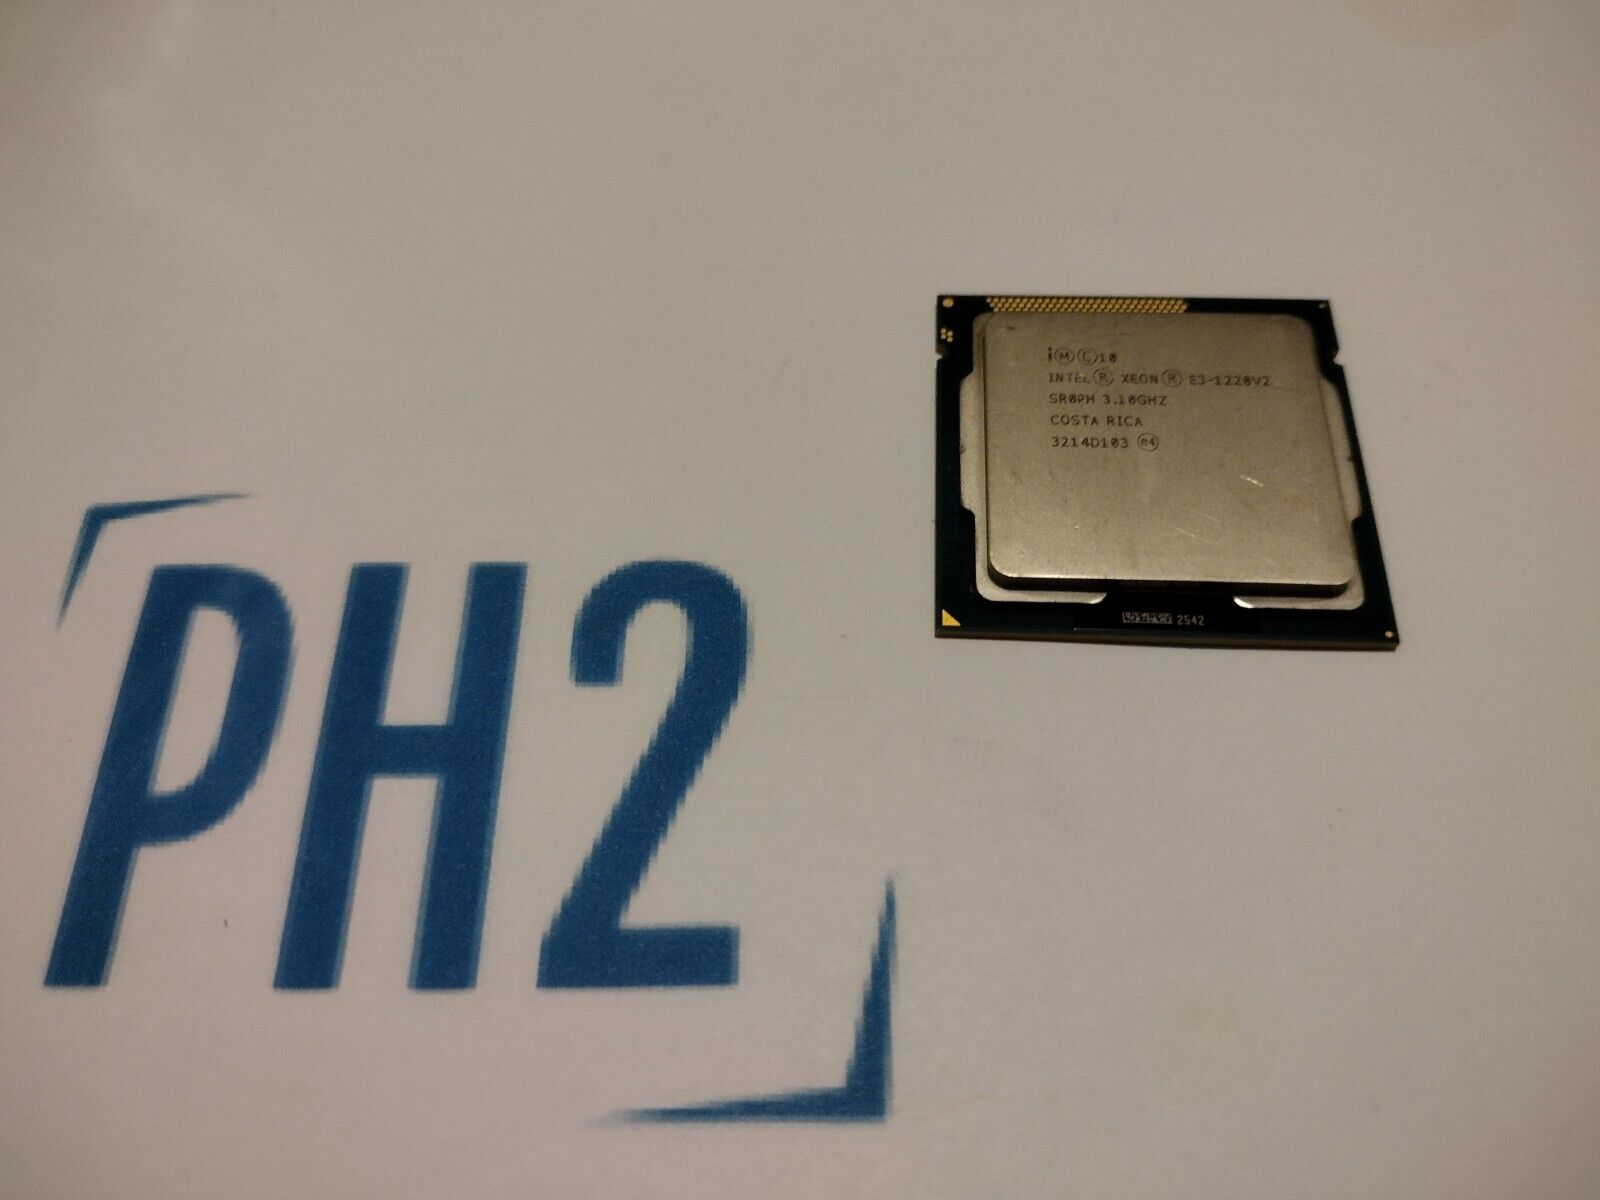 INTEL SR0PH Xeon E3-1220V2 3.10GHz Quad-Core Processor